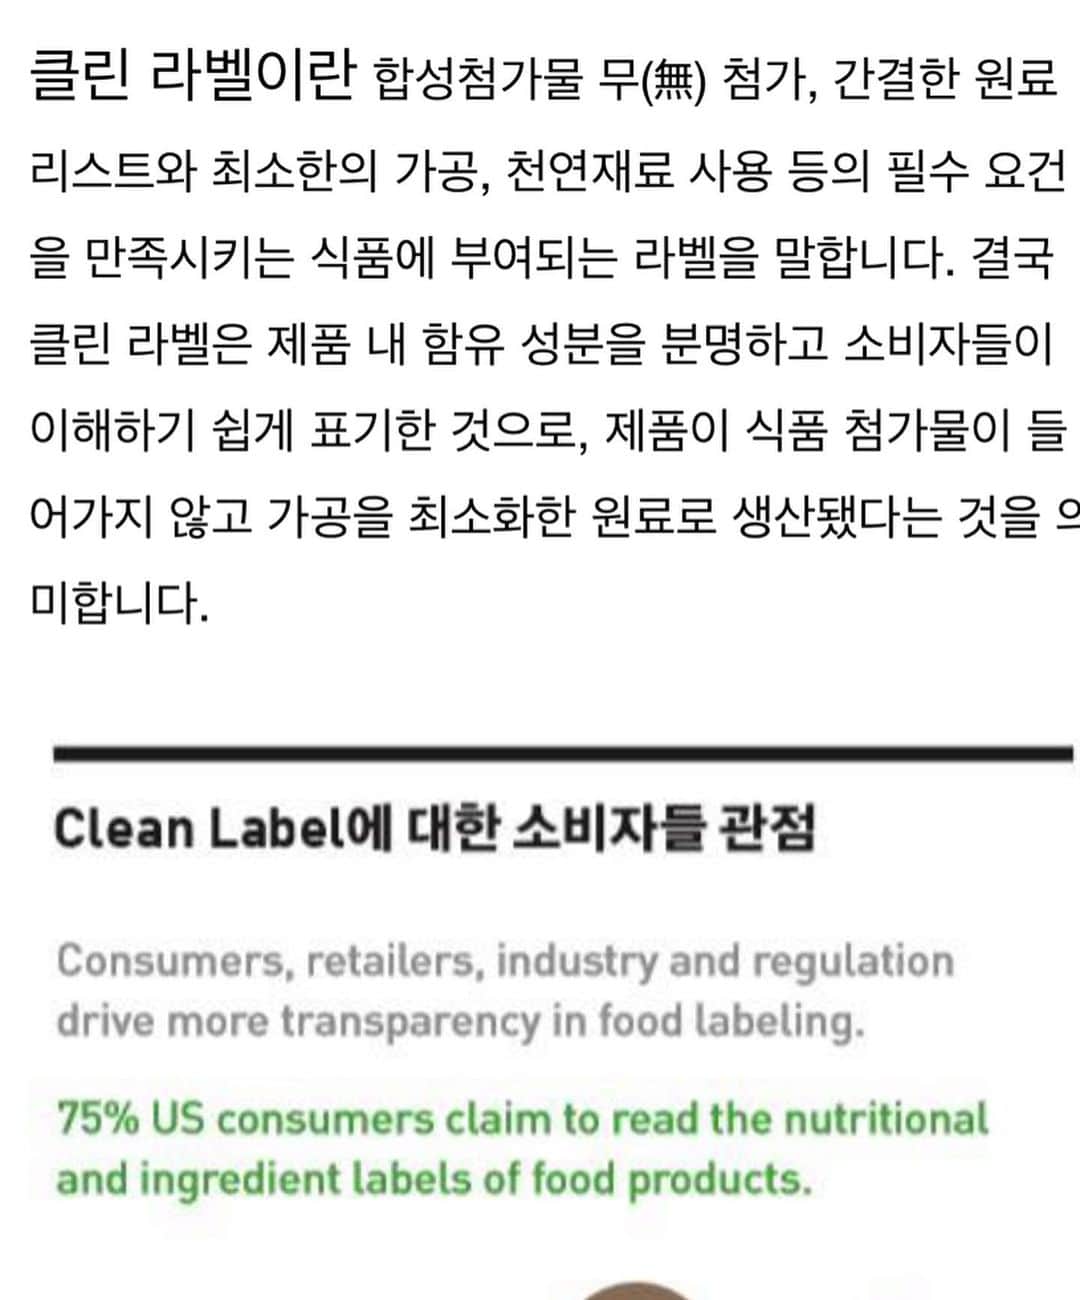 アン・ソニョンさんのインスタグラム写真 - (アン・ソニョンInstagram)「아싸😍😍😍😍 #cleanlabel  #클린라벨 3만개 가까이 해시태그중에 쟁쟁한 미국 큰브랜드, 금발머리 인싸 누나 형아들 제치고 , 울  #바로먹는뮤즐리 먹는 바로 @baro_seo  사진이 인기게시물로 3시간만에 등극했시유😍 여러분들의 좋아요❤️덕분이에요 !! . . . #클린라벨캠페인 은 정크푸드, 인스탄트 식품에 지친 미국내에서, “소비자들이 나서서 ‘브랜드 우선이 아니라’ , ‘non-gmo’ ‘건강한식품원재료’를 우선선택하고, 인공감미료나 화학적 성분가공 다 빼고 ‘최소한의가공’ 으로 최대한 자연그대로의 영양에 가깝게 먹을수 있는 식품을 골라서 먹자” 라는 의식전환운동이예요. 그래서 #cleanlabel 또는 #cleanlabelmovement  등으로 태그들을 달기시작했고 지금 선풍적인 인기라고합니다.. . . . 씨리얼 종주국인 미국 유럽에 감히 언젠가는 도전장 내밀고픈 맴으로 만든, #바로먹는뮤즐리 💚 #baro_muesil . . 첨엔, 그냥 다이어터나 아기들도 ‘뭔가씹고싶을때” 부담없이 집어먹을수 있는 먹거리를 생각하다, #레이핏  헬씨쉐이크 에 타먹을수 있는 오독오독한 통곡물... 을 생각해내었고, 시판되는 시리얼, 그래놀라, 뮤즐리 대부분이 “건강해보이는이미지”를 쓰고 있으나 당이 상당히 과도하게 많다는걸 찾아내고 심각히 고민해보았어요. . . . 과연 씨리얼하면 떠오르는 달콤짭짜름고소한 “맛”을 포기하고도, 이것이 소비자들에게 먹힐것인가... 매번 최소수량부터 시작해 제조원가나 모든조건이 당연히 대기업보다 훨씬 불리한 작은회사대표인 저는 팔리지않았을때 재고부담이라던가, 홀로 거대 마케팅잘되는 큰 브랜드와 싸워 이겨내려면, 결국 “품질”과 “진정성”, “가격경쟁력”밖에 없다고 생각을 하게됩니다. . . . 어짜피 마케팅은 제가 직접하면되고, 요즘 여러 먹거리 이슈로 다들 걱정이 많으시니, 결론은 제가 “직접 발로뛰어서” “내아기가먹을식품”을 스스로 만든다는 걸 기본으로 제품을 만들어내고 있어요. . . . #바로먹는뮤즐리 는 제기준에 가장 제조요건이 깐깐하고, 이미 위생 당연히 인증받은 깨끗한곳에서, 오랜역사와 경험치를 갖고 있으며 대기업 씨리얼의 대부분을 제조해온 15년이상의 내공있는 #livinglife 제조사와 손잡고 만들었고, (직접 화성이고, 곤지암이고, 증평까지... 공장마다 다 직접 뛰어댕기는 저의 집착... 아시죠??? 딴것도 아니고 #내가족이함께먹을꺼니까) 보시다시피 자체 미생물검사까지 연구실두고 하실만큼 #위생철저 #품질우선 이 기본으로 딱 서있는회사예요✌🏻 (더 자세한 Q&A 및 생산과정 촬영영상은 조만간 유튜브 #하고싶다티비 통해 업뎃할께요🤗) . . 그냥 씨리얼이라기 보다, 어렸을적 할머니가 콩이나 현미 살짝 쪄서 가마솥에 덖어내주던, 그 “건강한영양간식”을 생각하며 만들었어요. (성분절반이 콩이라는것도 그러한 이유입니다😌) . . . 우유나 말아먹을 무언가가 없어도, 바쁜사무실에서 차안에서 그냥 떠서 한입씩 오독오독 드시라고 스푼🥄개별 내장해두었고, 방부제나 다른 첨가물이 일체 없다보니, 대용량으로 열었다 닫았다 하시며 드시다가 행여 변질되거나 불순물이 들어가거나 할 것등등이 걱정되어 - 고객 응대하다보니... 별의별 컴플레인을  다 받기쉬운 식품판매업 인지라.....작은일 하나에도 더 몸사리게되는 제맘 아시쥬? 🤧- 일단은 무조건 30g 개별파우치 x30개 박스세트로만 만들었다는점 양해부탁드립니다. . . . 아직 우리나라엔 #클린라벨  인증 발급기관이 없지만, 나중에 미국에 홀푸드마켓 입점하고픈 야망을 다지며 ㅋㅋㅋㅋㅋ 클린라벨 기준에 맞는 식품.  온가족 믿고 먹을수 있는 뮤즐리.  #바로먹는뮤즐리 가 여러분의 바쁜아침에 든든한 동반자가 되길 바래봅니다.  #madeinkore 뮤즐리가 전세계로 가는 그날까지!!! 여러분 많이 사랑해주시면 저 진짜로 더더더 좋은 제품 용기내어 더 열심히 발로뛰어 맹글어볼께요💚💚💚 . . . #착한소비 #착한기부 #온라인러브바자  @lovebazaar_online」7月12日 13時53分 - anney_an_love